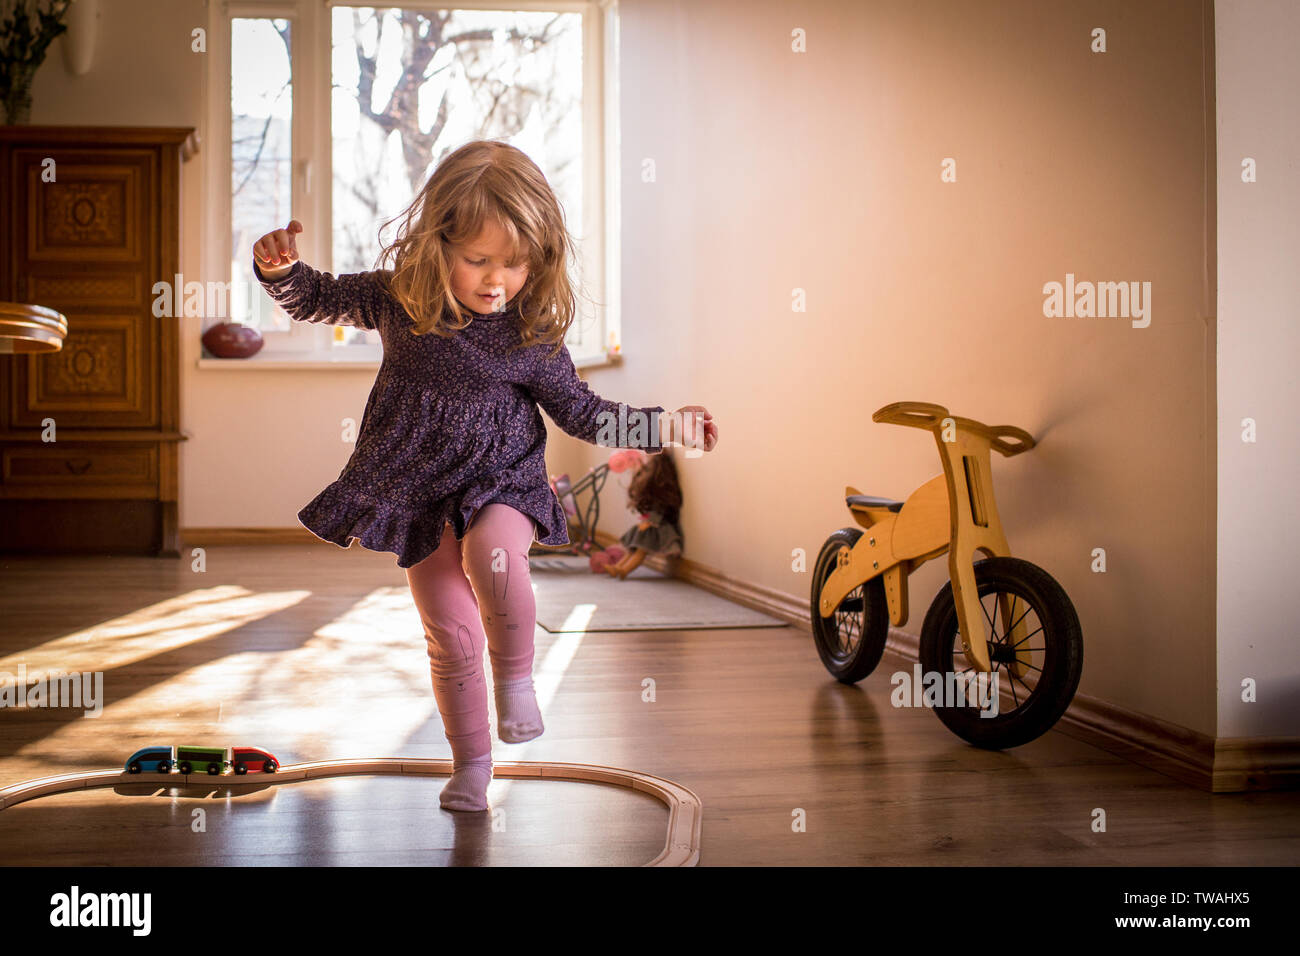 Feliz, pequeño niño niña jugando y bailando dentro de las vías de tren de juguete, en una soleada habitación con ventana, divertirse durante su repr. Foto de stock